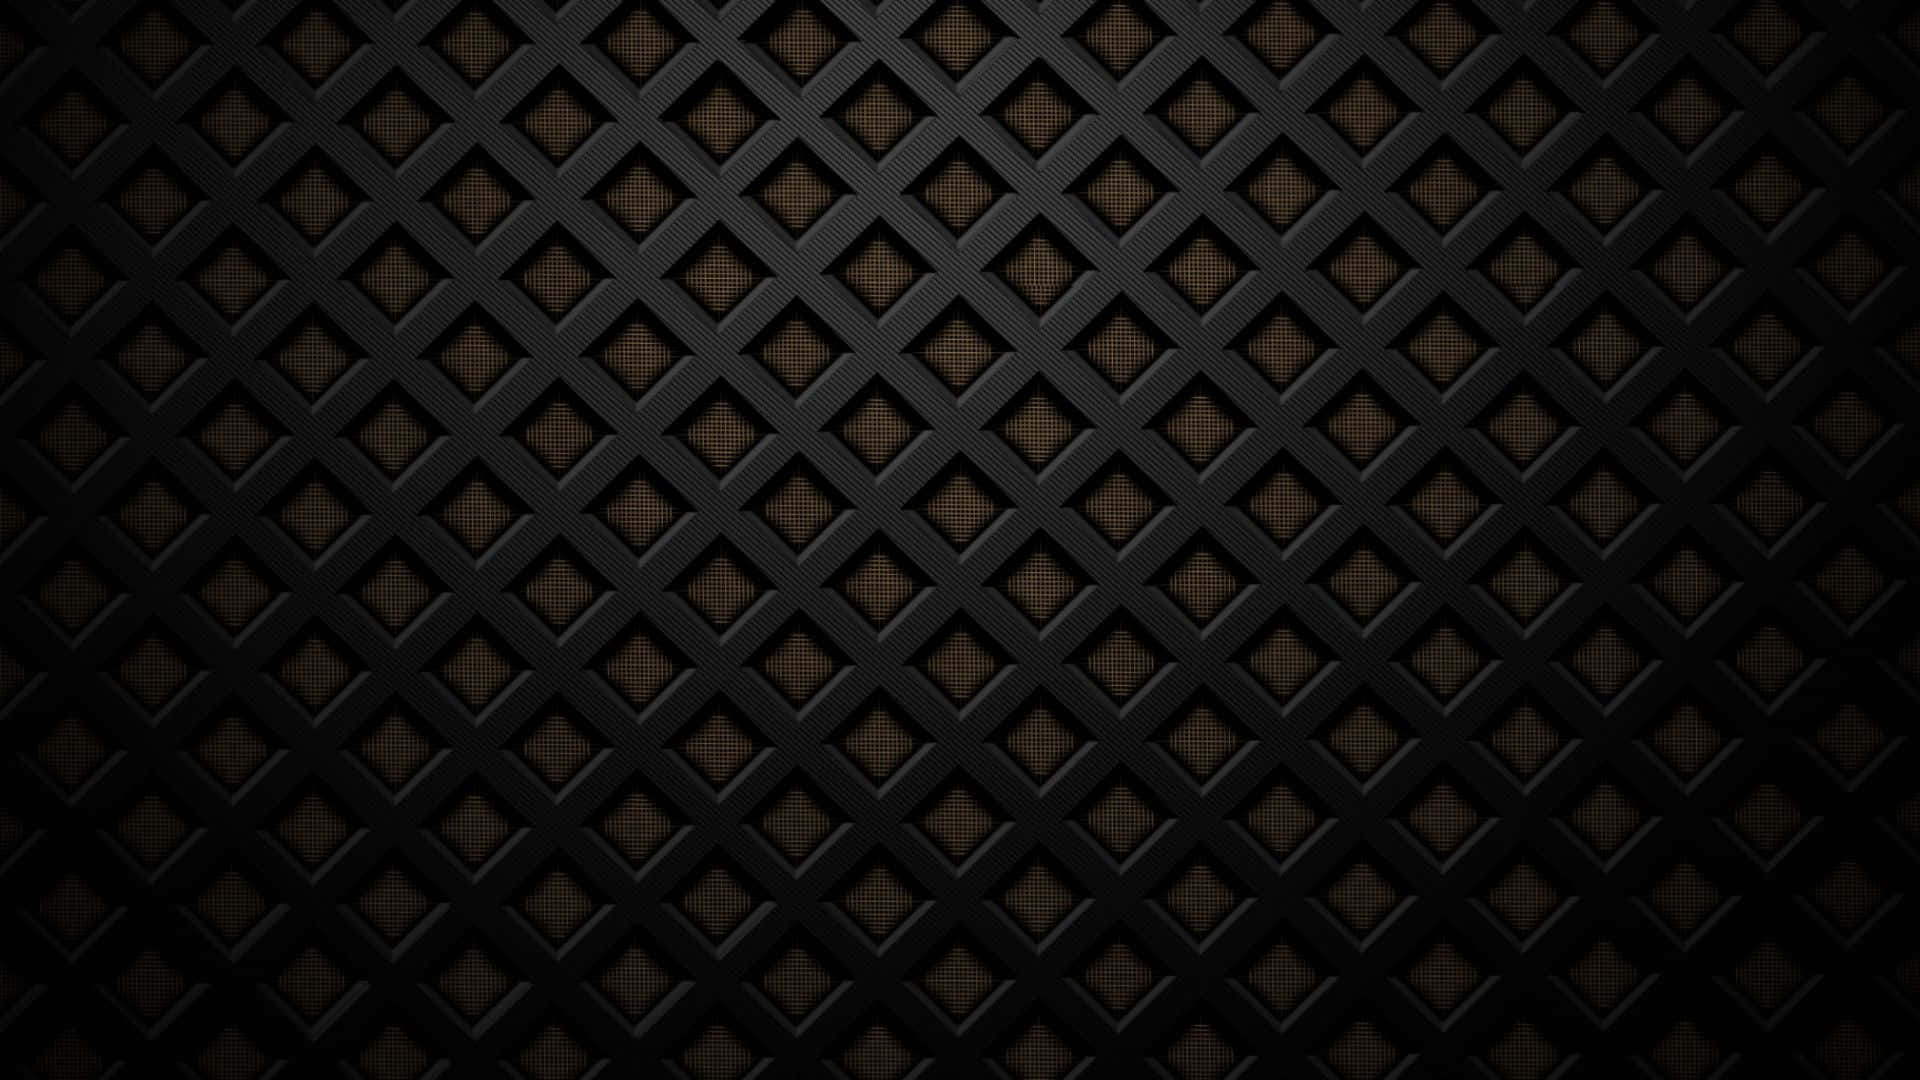 Metal tekstur sort stål kridebilleder se ud